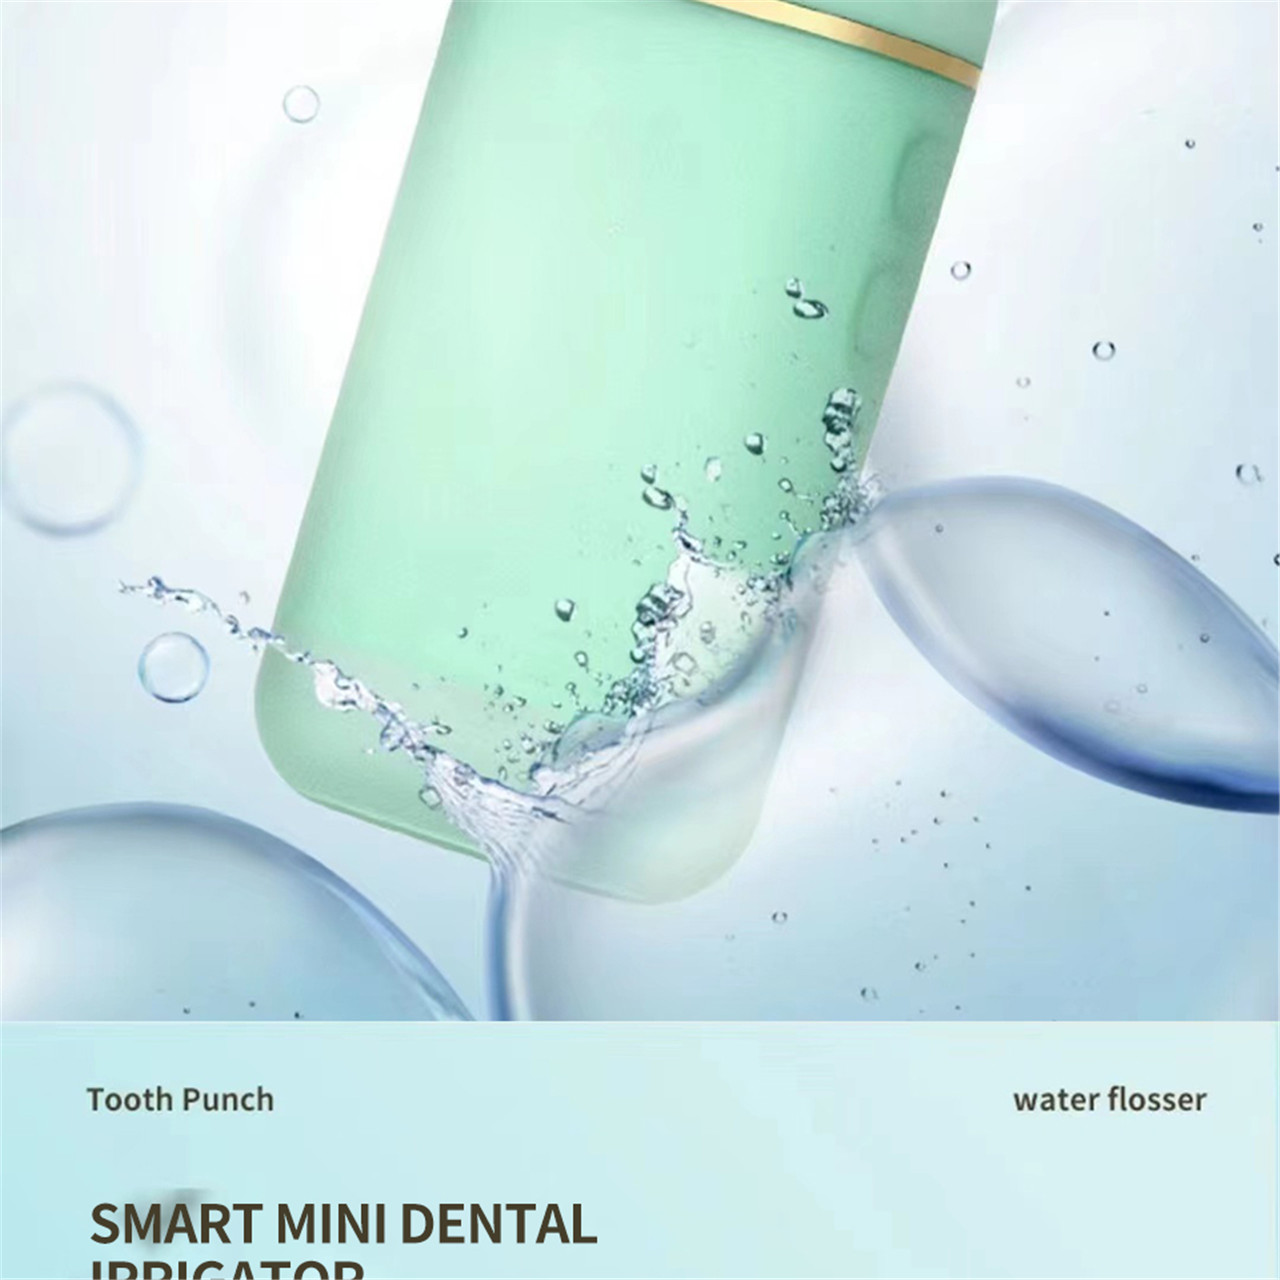 Утасгүй шүдэнд зориулсан цэнэглэдэг усан утас - Зөөврийн усан шүд цэвэрлэгч (9)